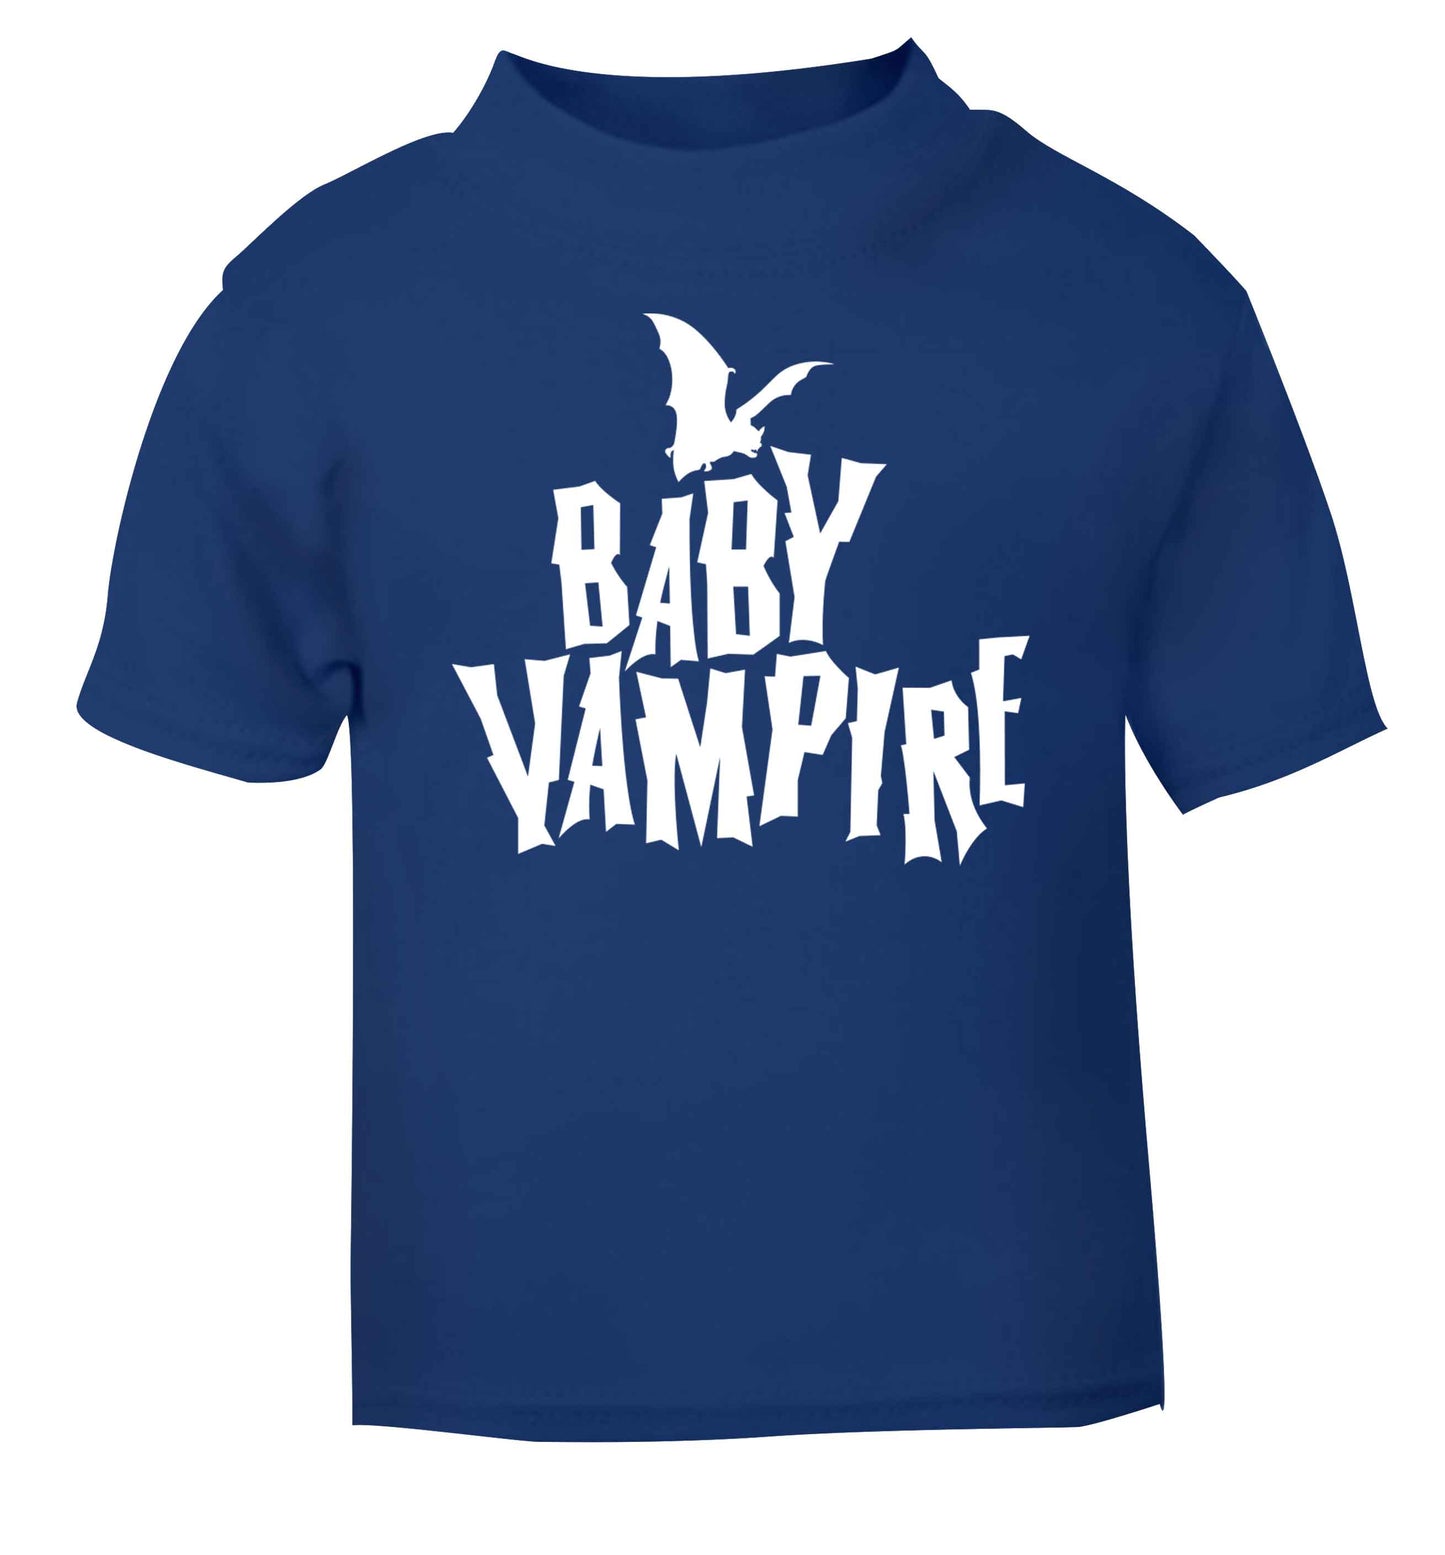 Baby vampire blue baby toddler Tshirt 2 Years